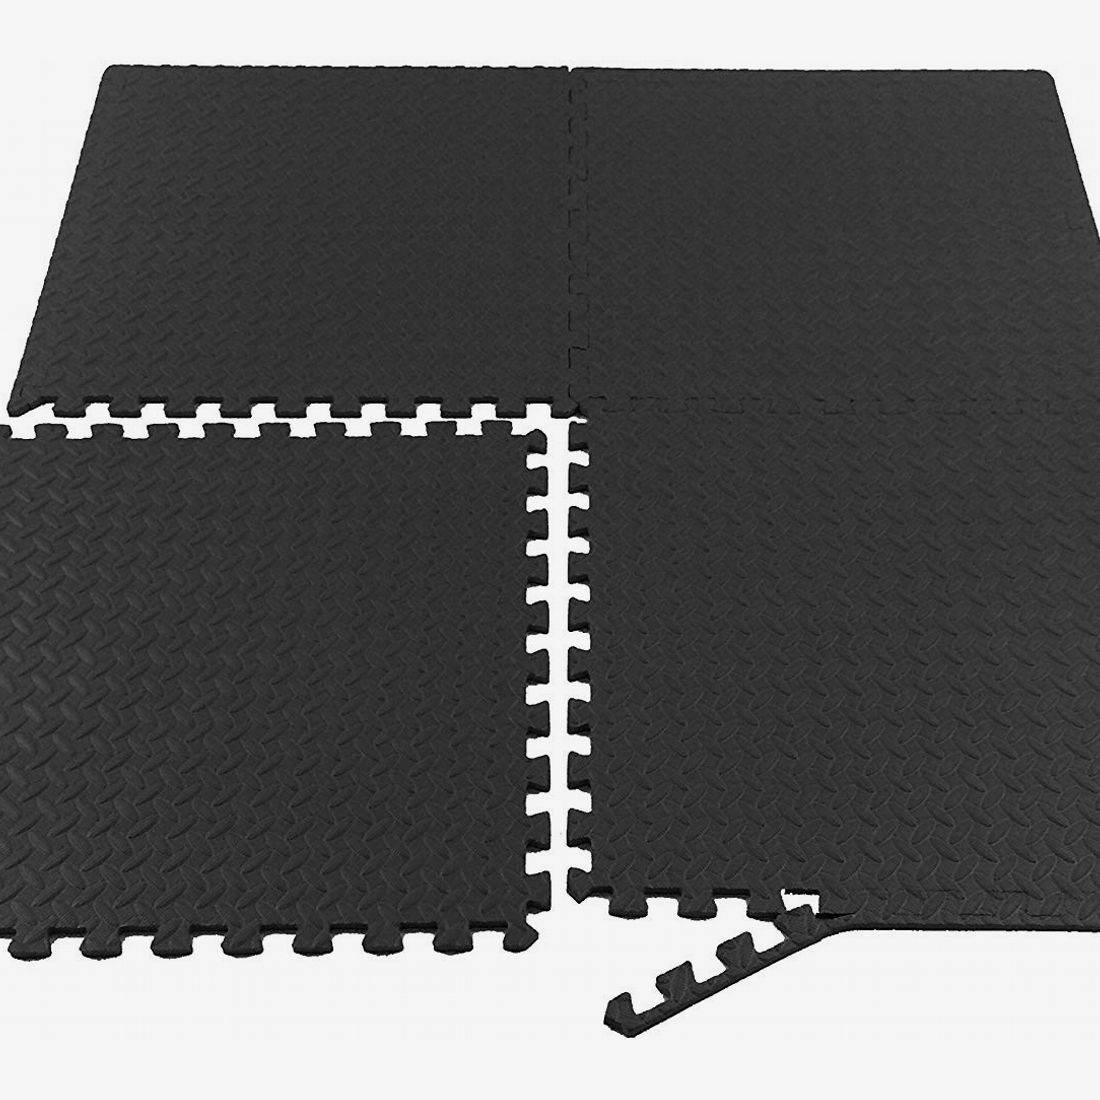 white exercise mat